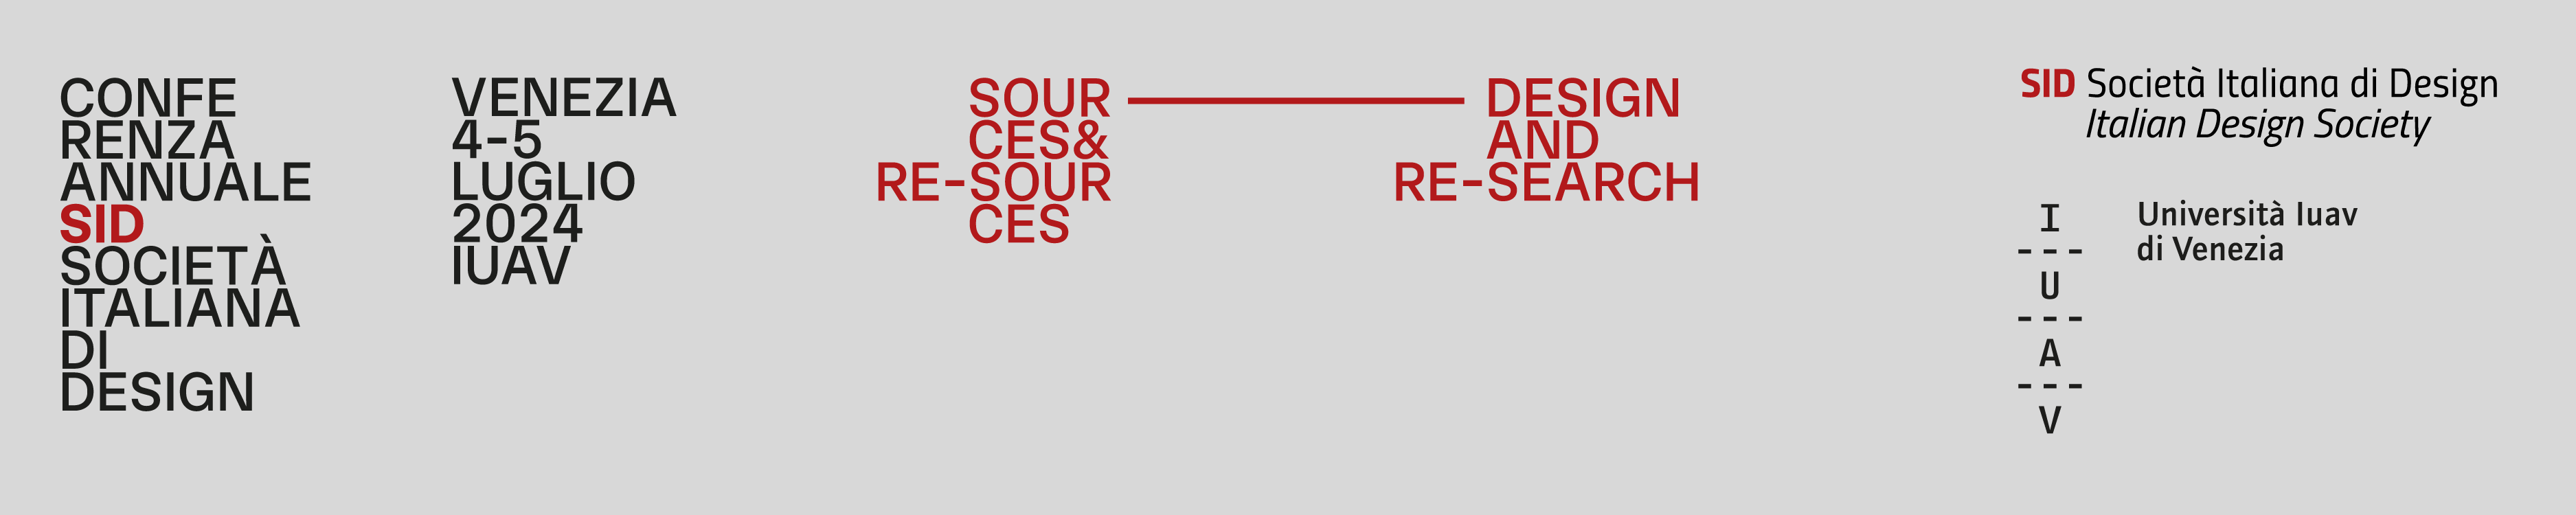 Logo SID 2024 - Design e Ricerca: Fonti e Risorse | Design and Research: Sources and Resources